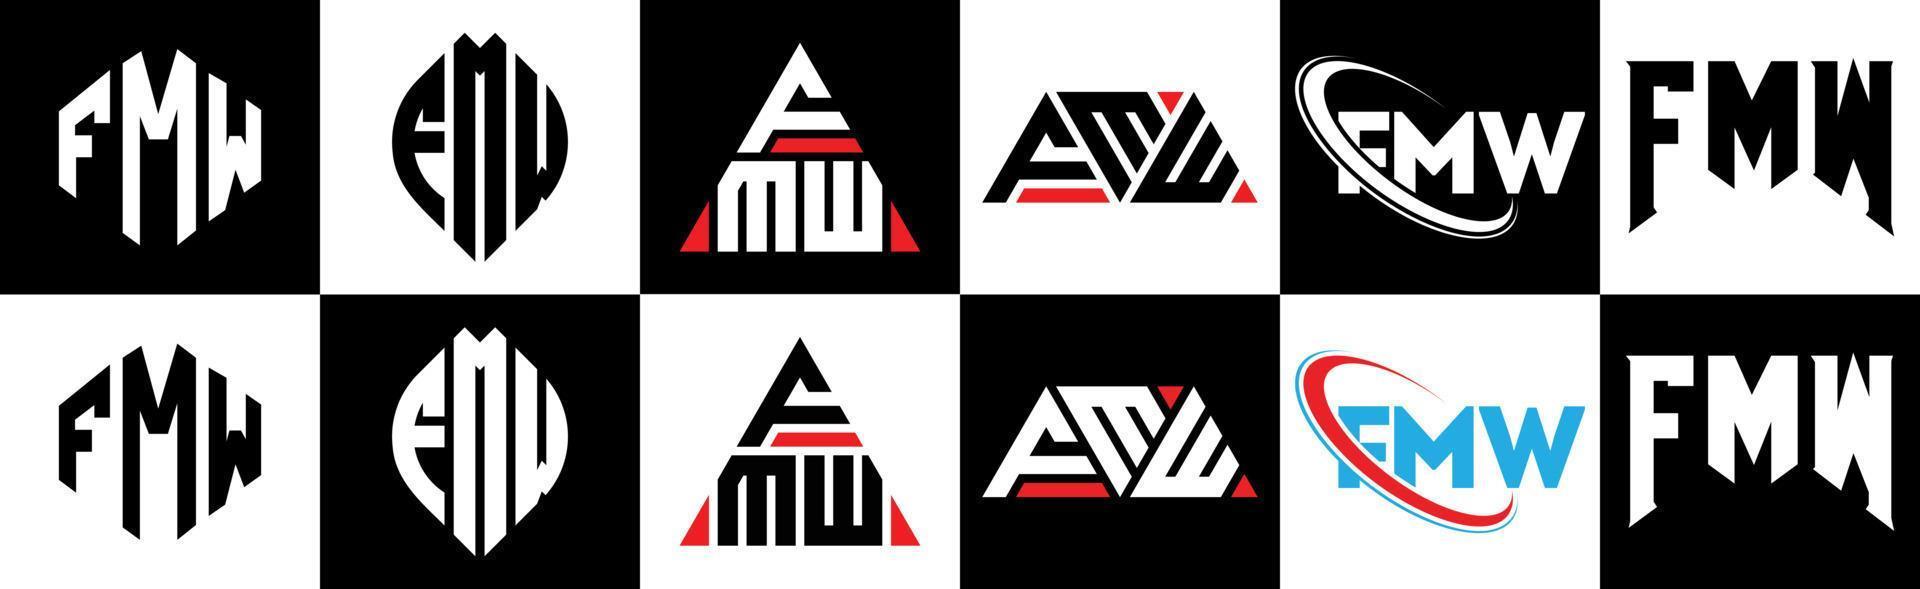 fmw brief logo ontwerp in zes stijl. fmw veelhoek, cirkel, driehoek, zeshoek, vlak en gemakkelijk stijl met zwart en wit kleur variatie brief logo reeks in een tekengebied. fmw minimalistische en klassiek logo vector